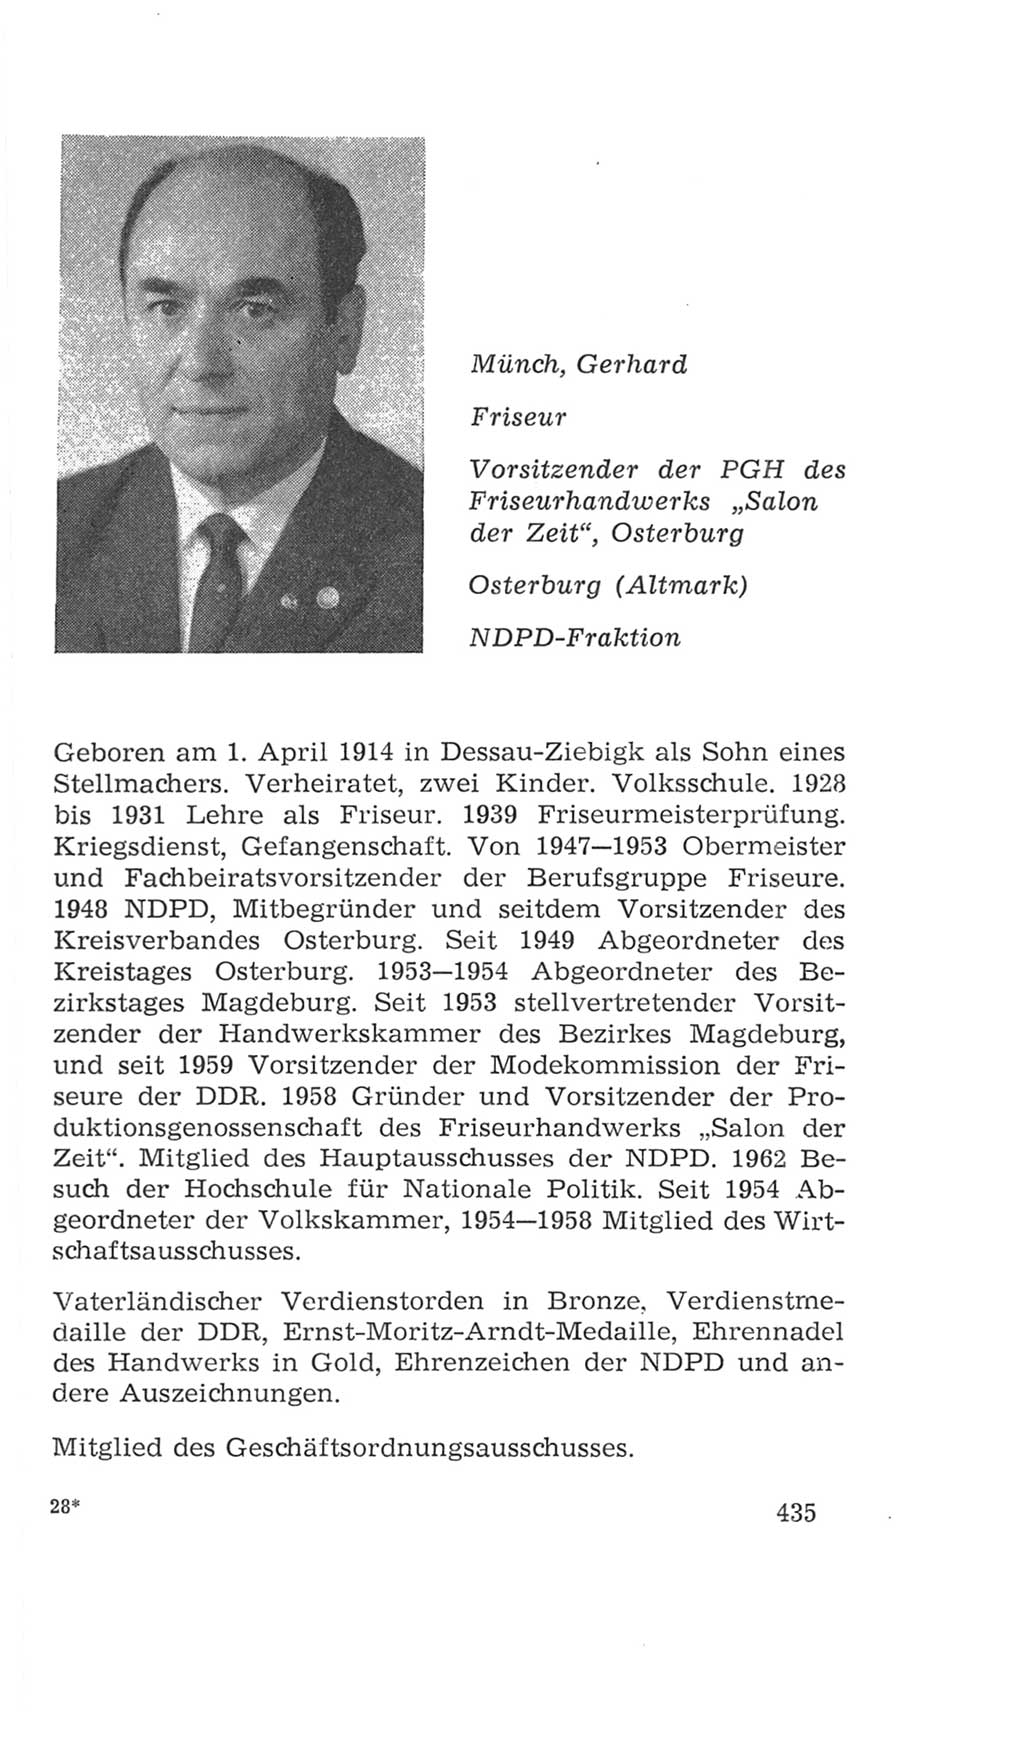 Volkskammer (VK) der Deutschen Demokratischen Republik (DDR), 4. Wahlperiode 1963-1967, Seite 435 (VK. DDR 4. WP. 1963-1967, S. 435)